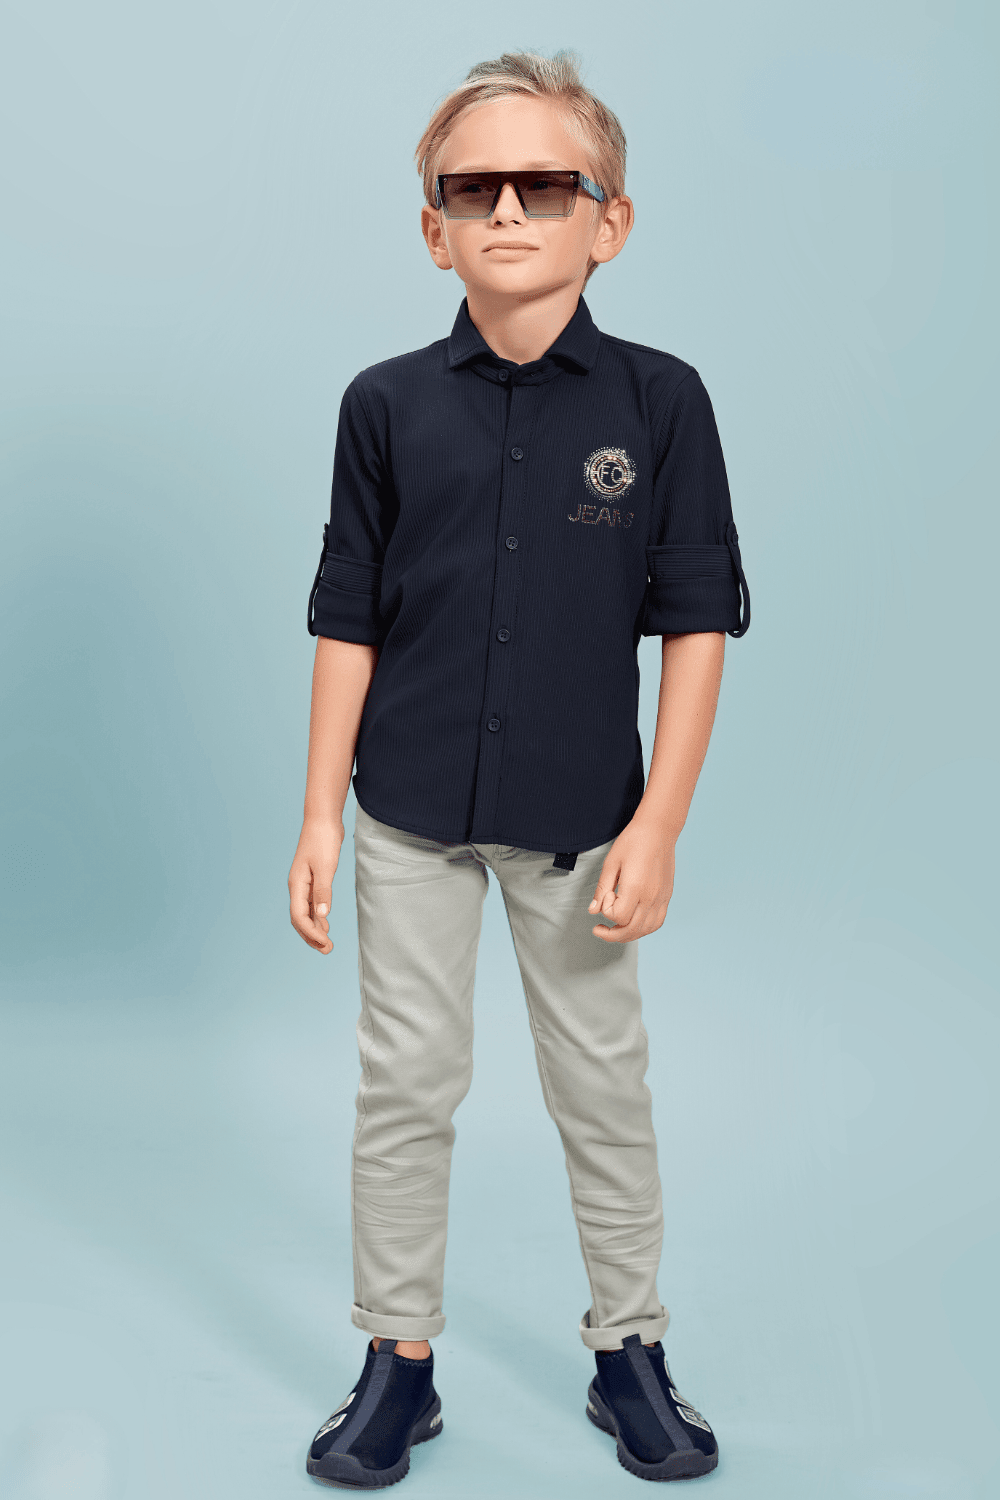 Children's Fashion Party Suit: Boy's Five